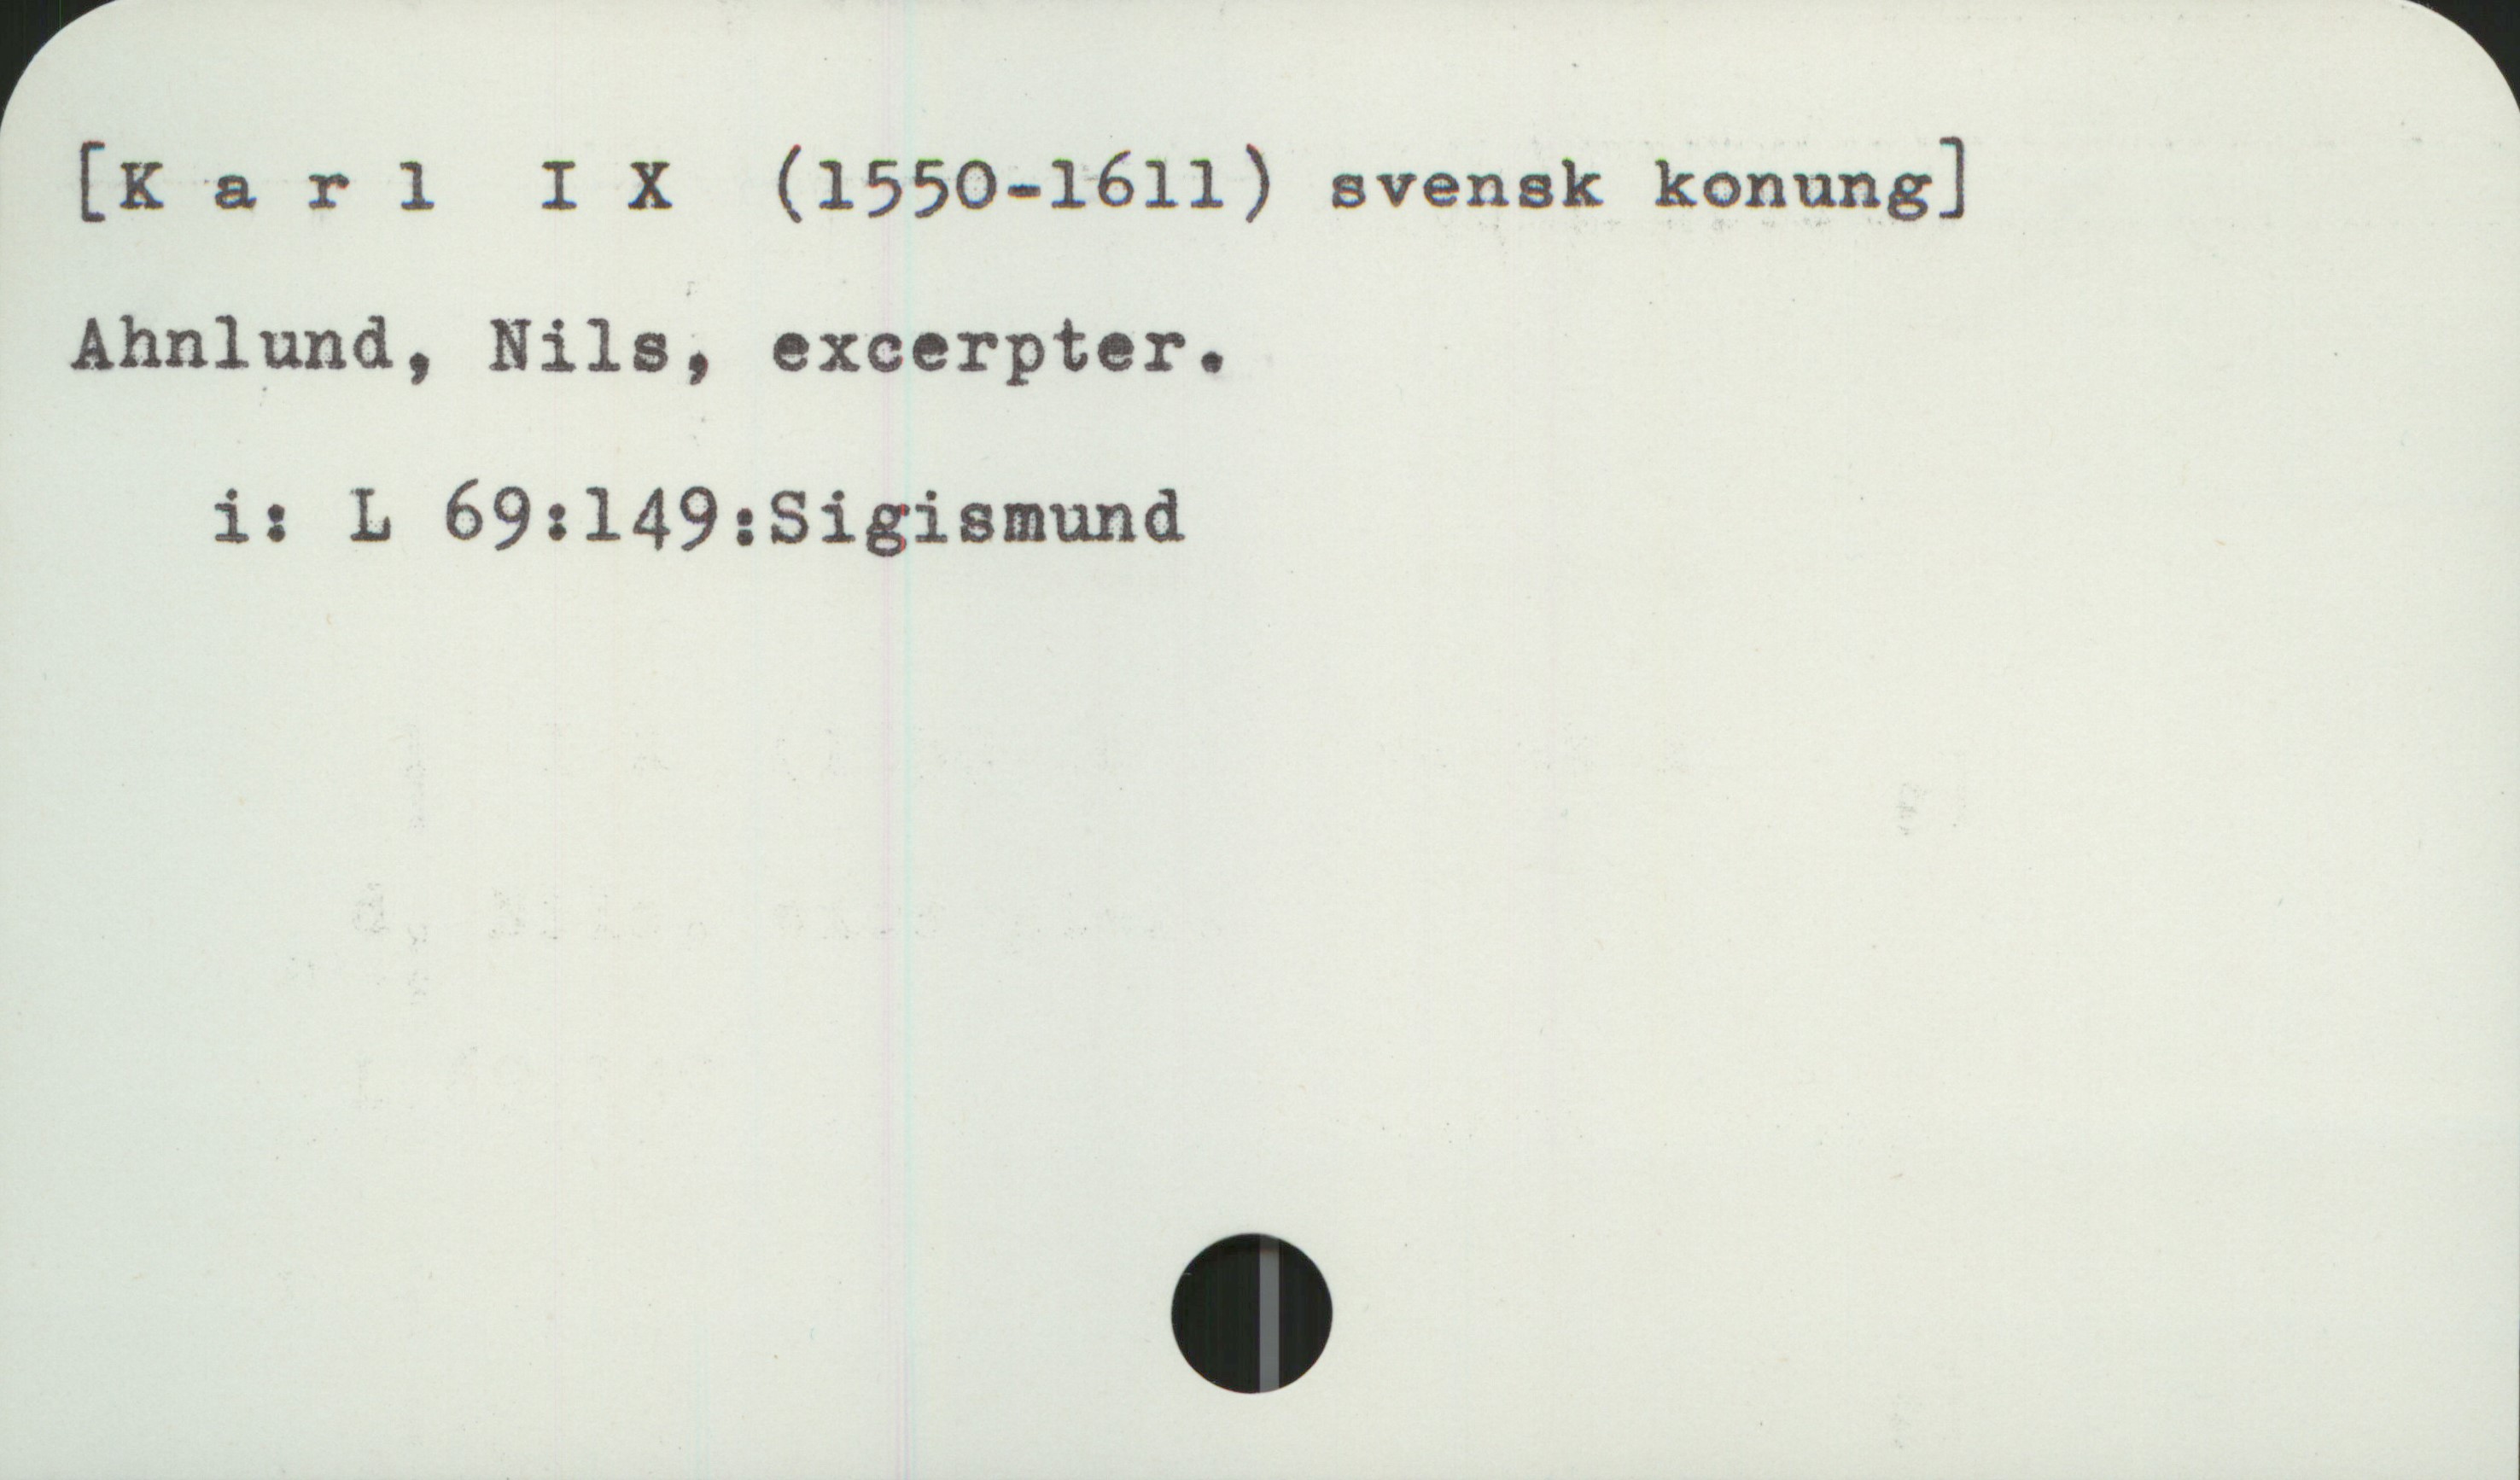  [K & r 1 I X (1550-1611) svensk konung]
Ahnlund, Nils, excerpter.
i: L 69:149;:Sigismund

